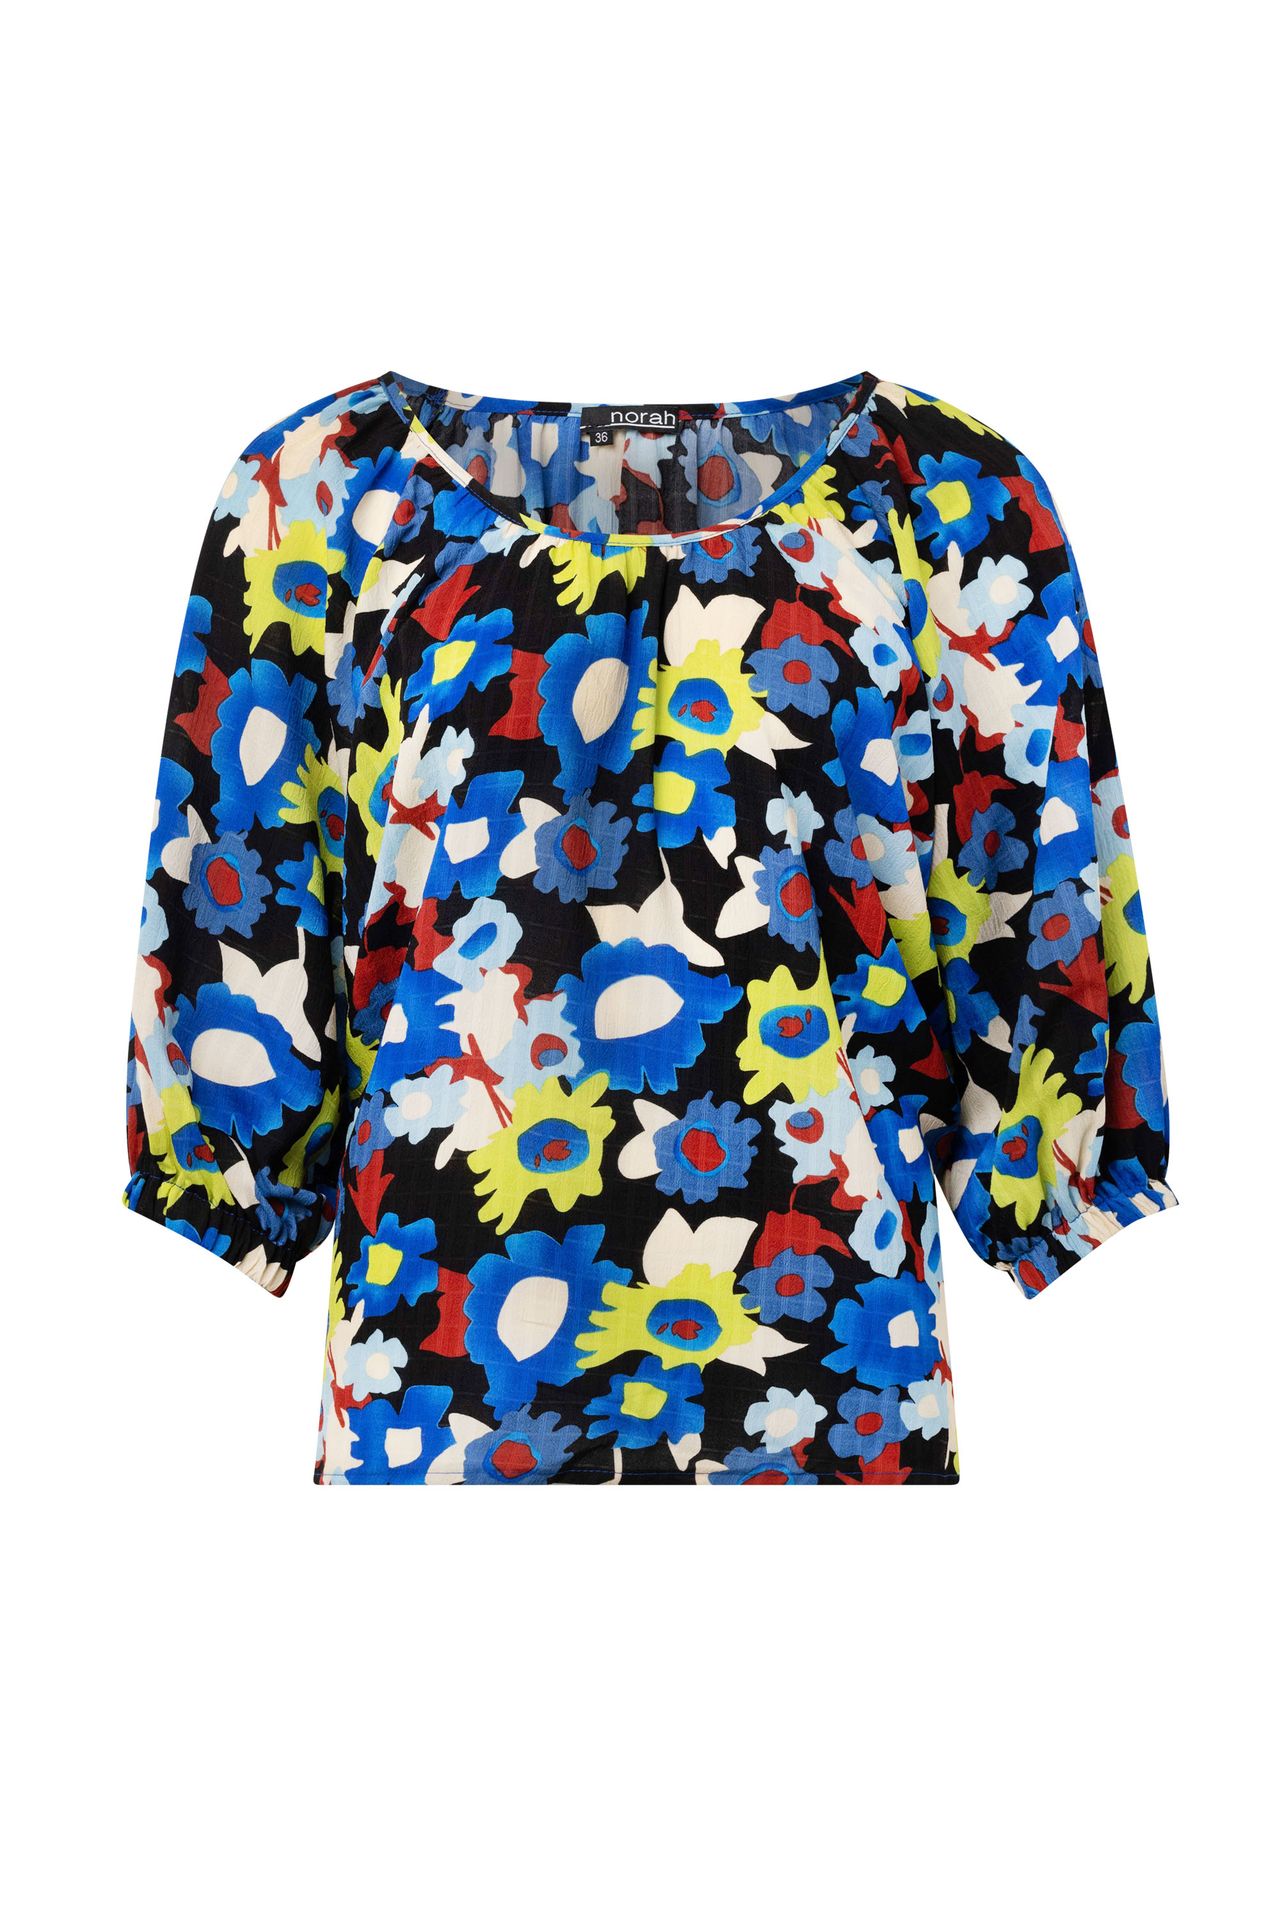 Norah Bloemen blouse black multicolor 214460-020